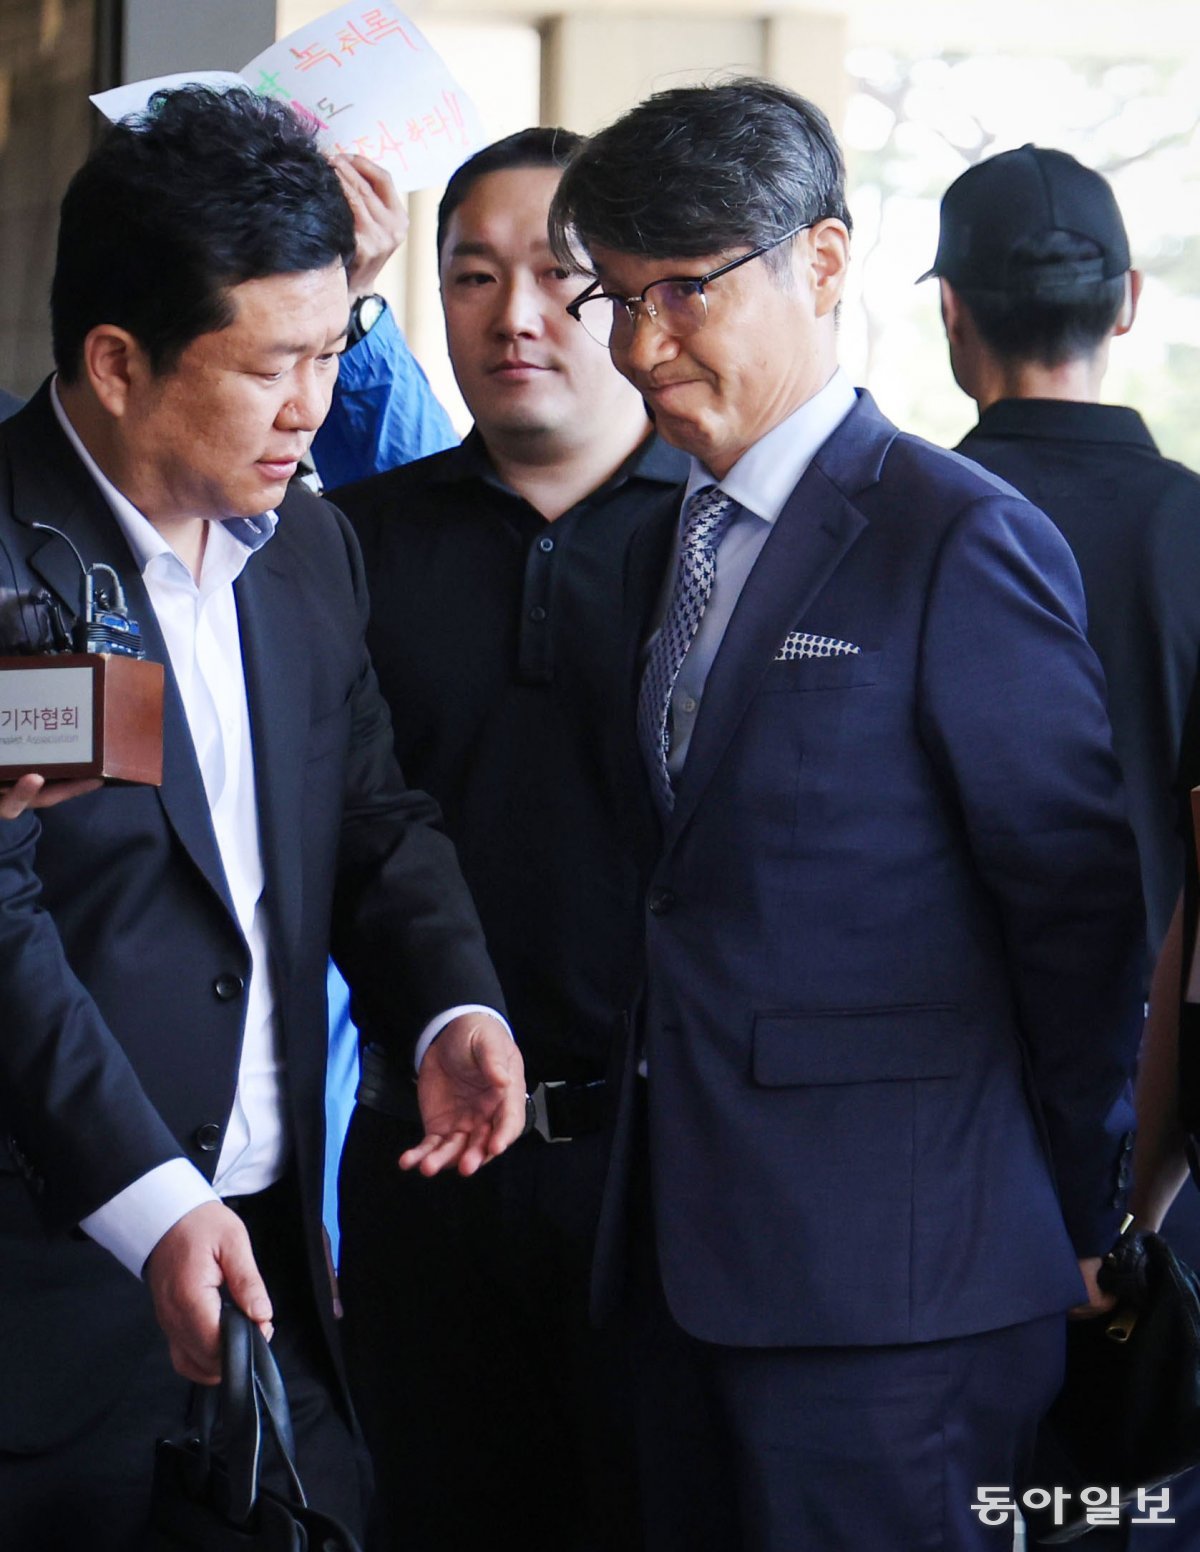 13일 최 목사가 취재진 질문을 모두 받은 뒤 서울지검 청사로 들어서고 있다. 박형기 기자 oneshot@donga.com